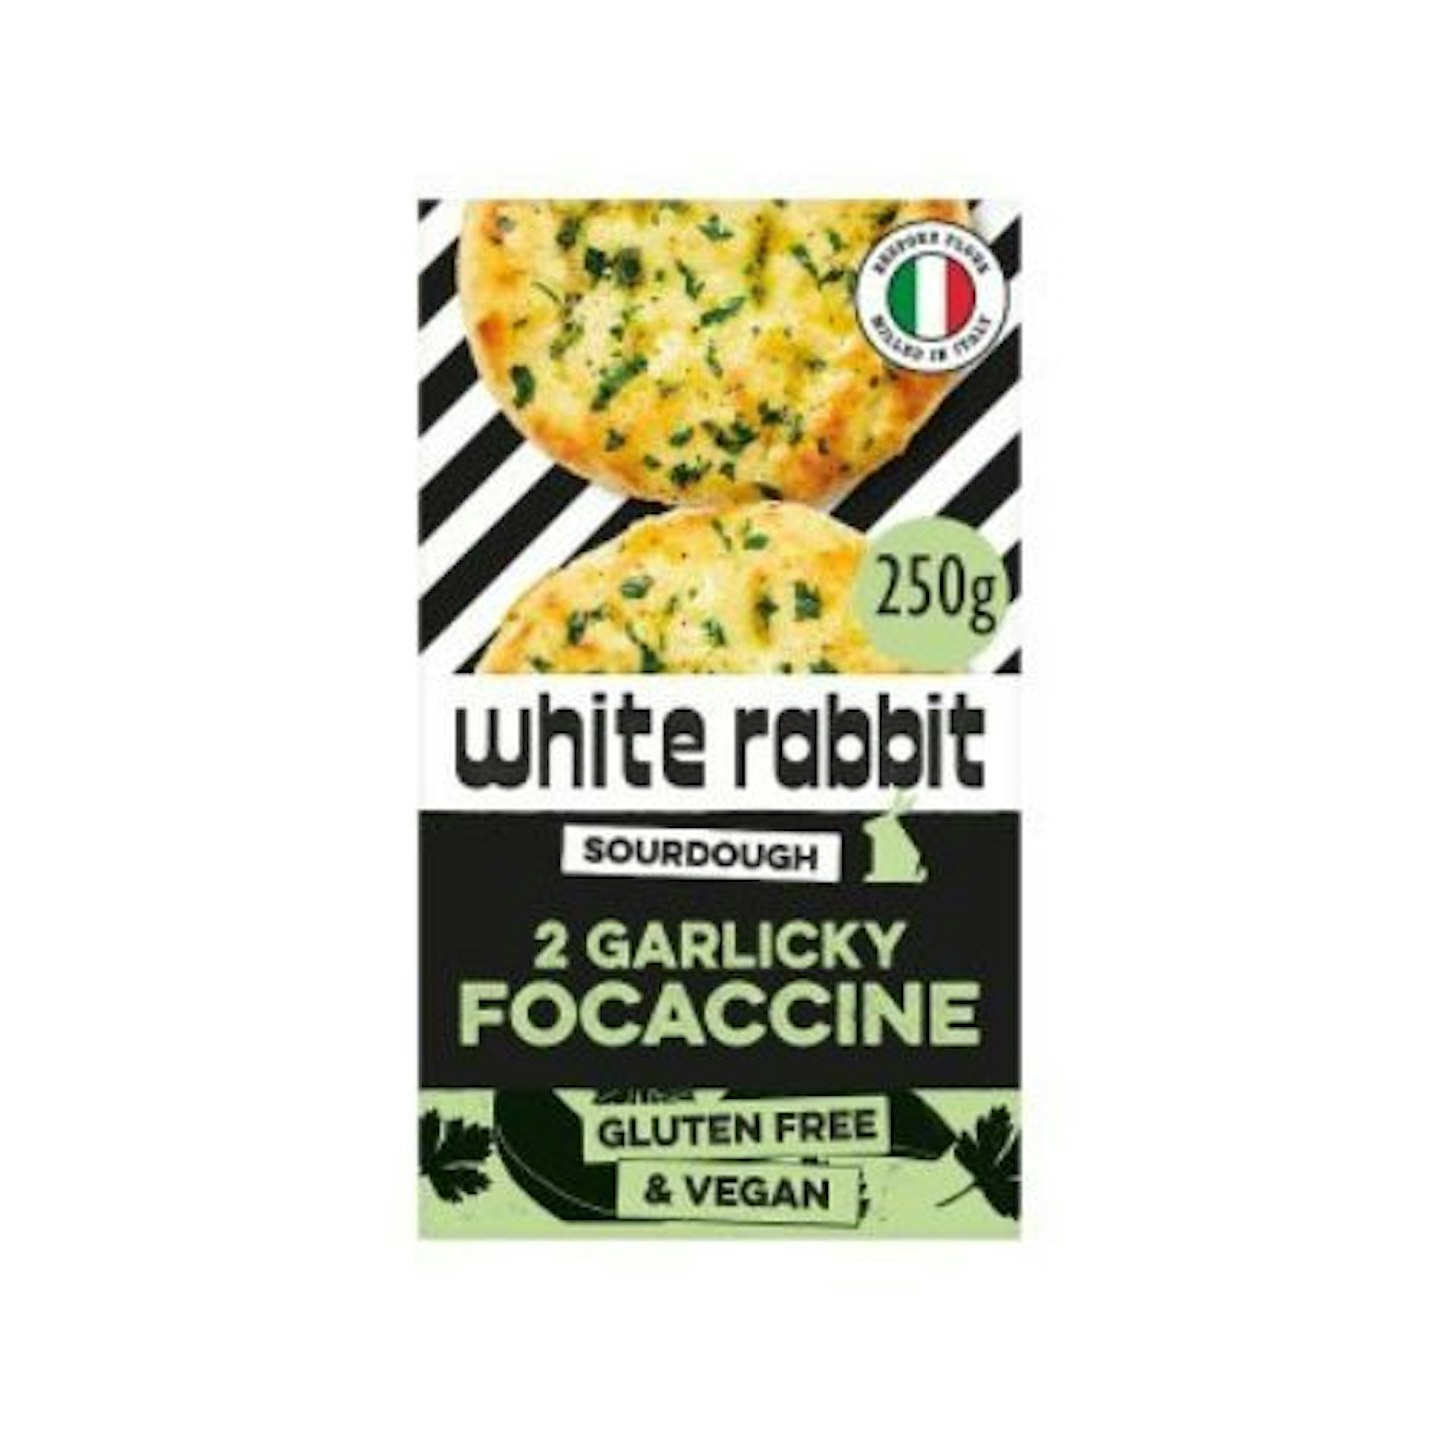 The White Rabbit Garlicky Focaccine